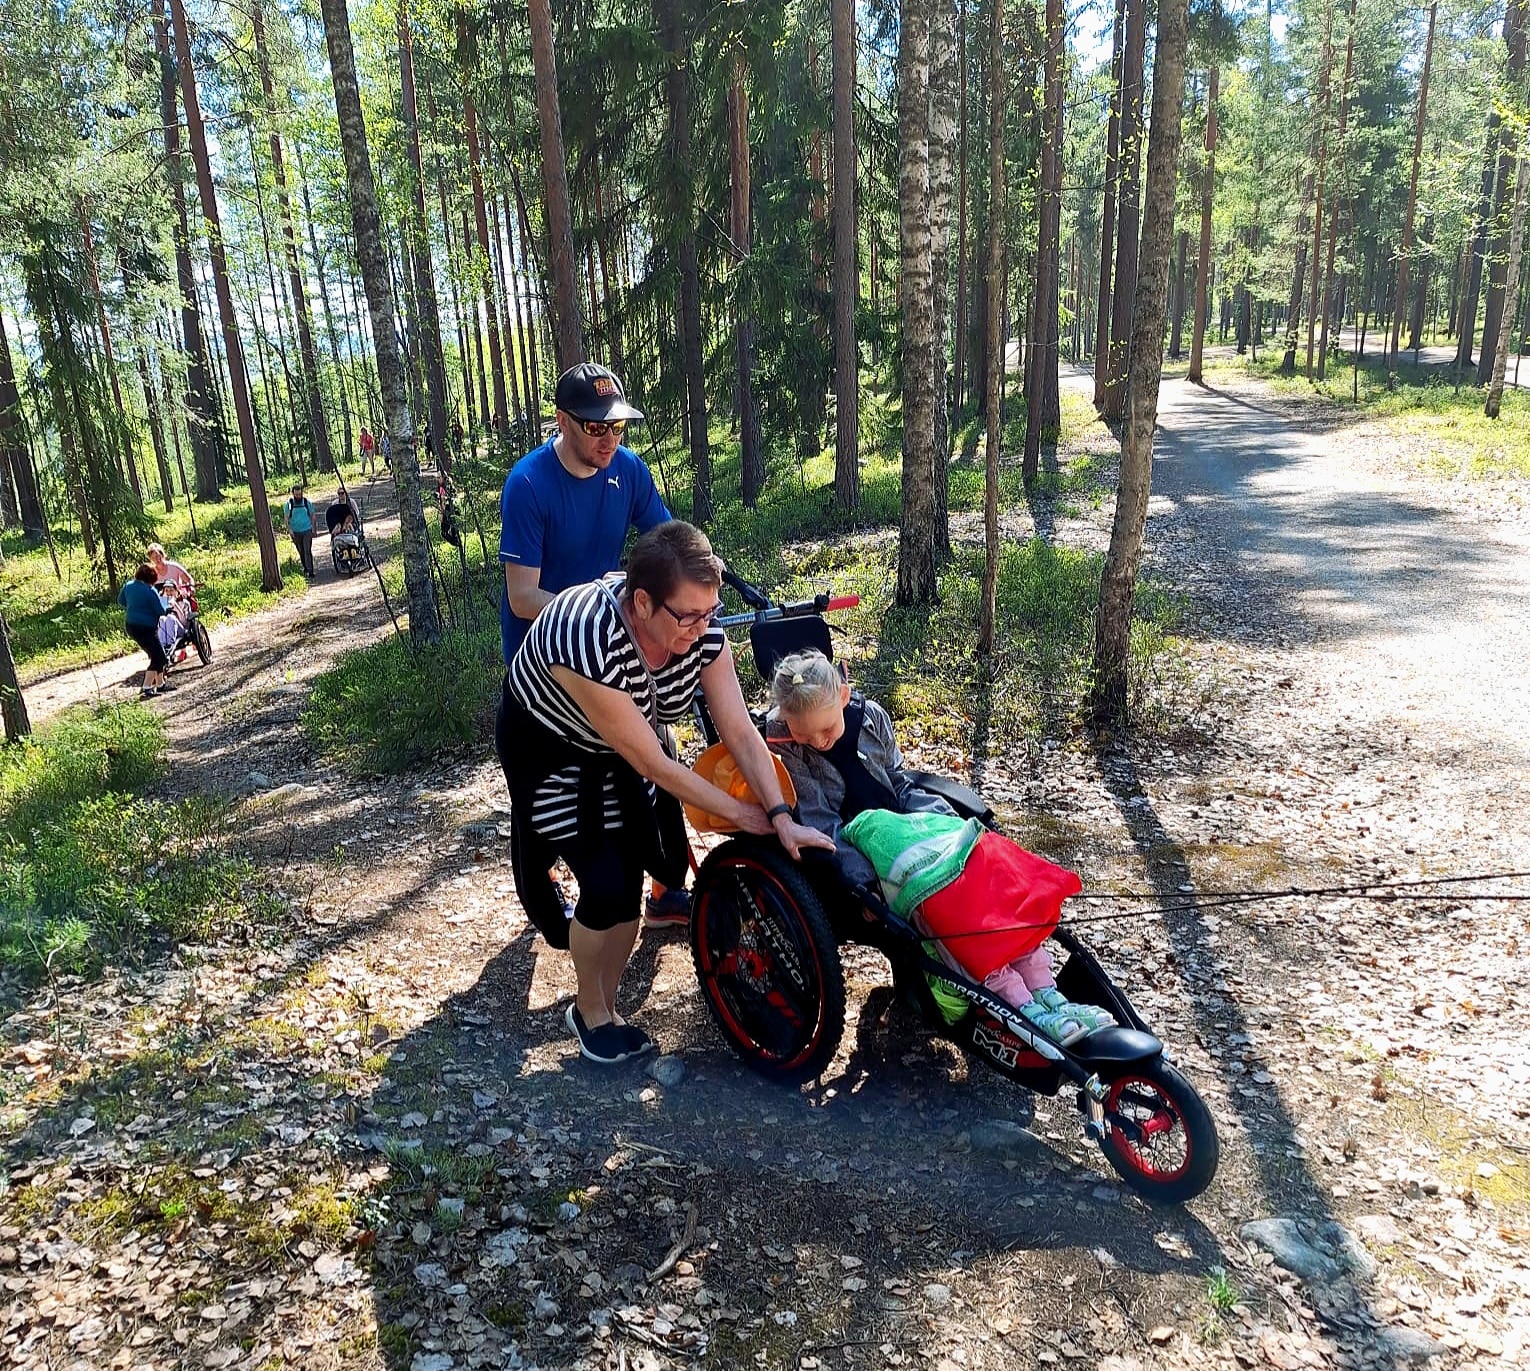 Kaksi aikuista työntää maastopyörätuolissa istuvaa lasta ylämäkeen metsäpolkua pitkin. Pyörätuolin vetonarut ovat kireällä, vaikkei vetäjä näy kuvassa. Taustalla näkyy ihmisiä ja maastopyörätuoleja.